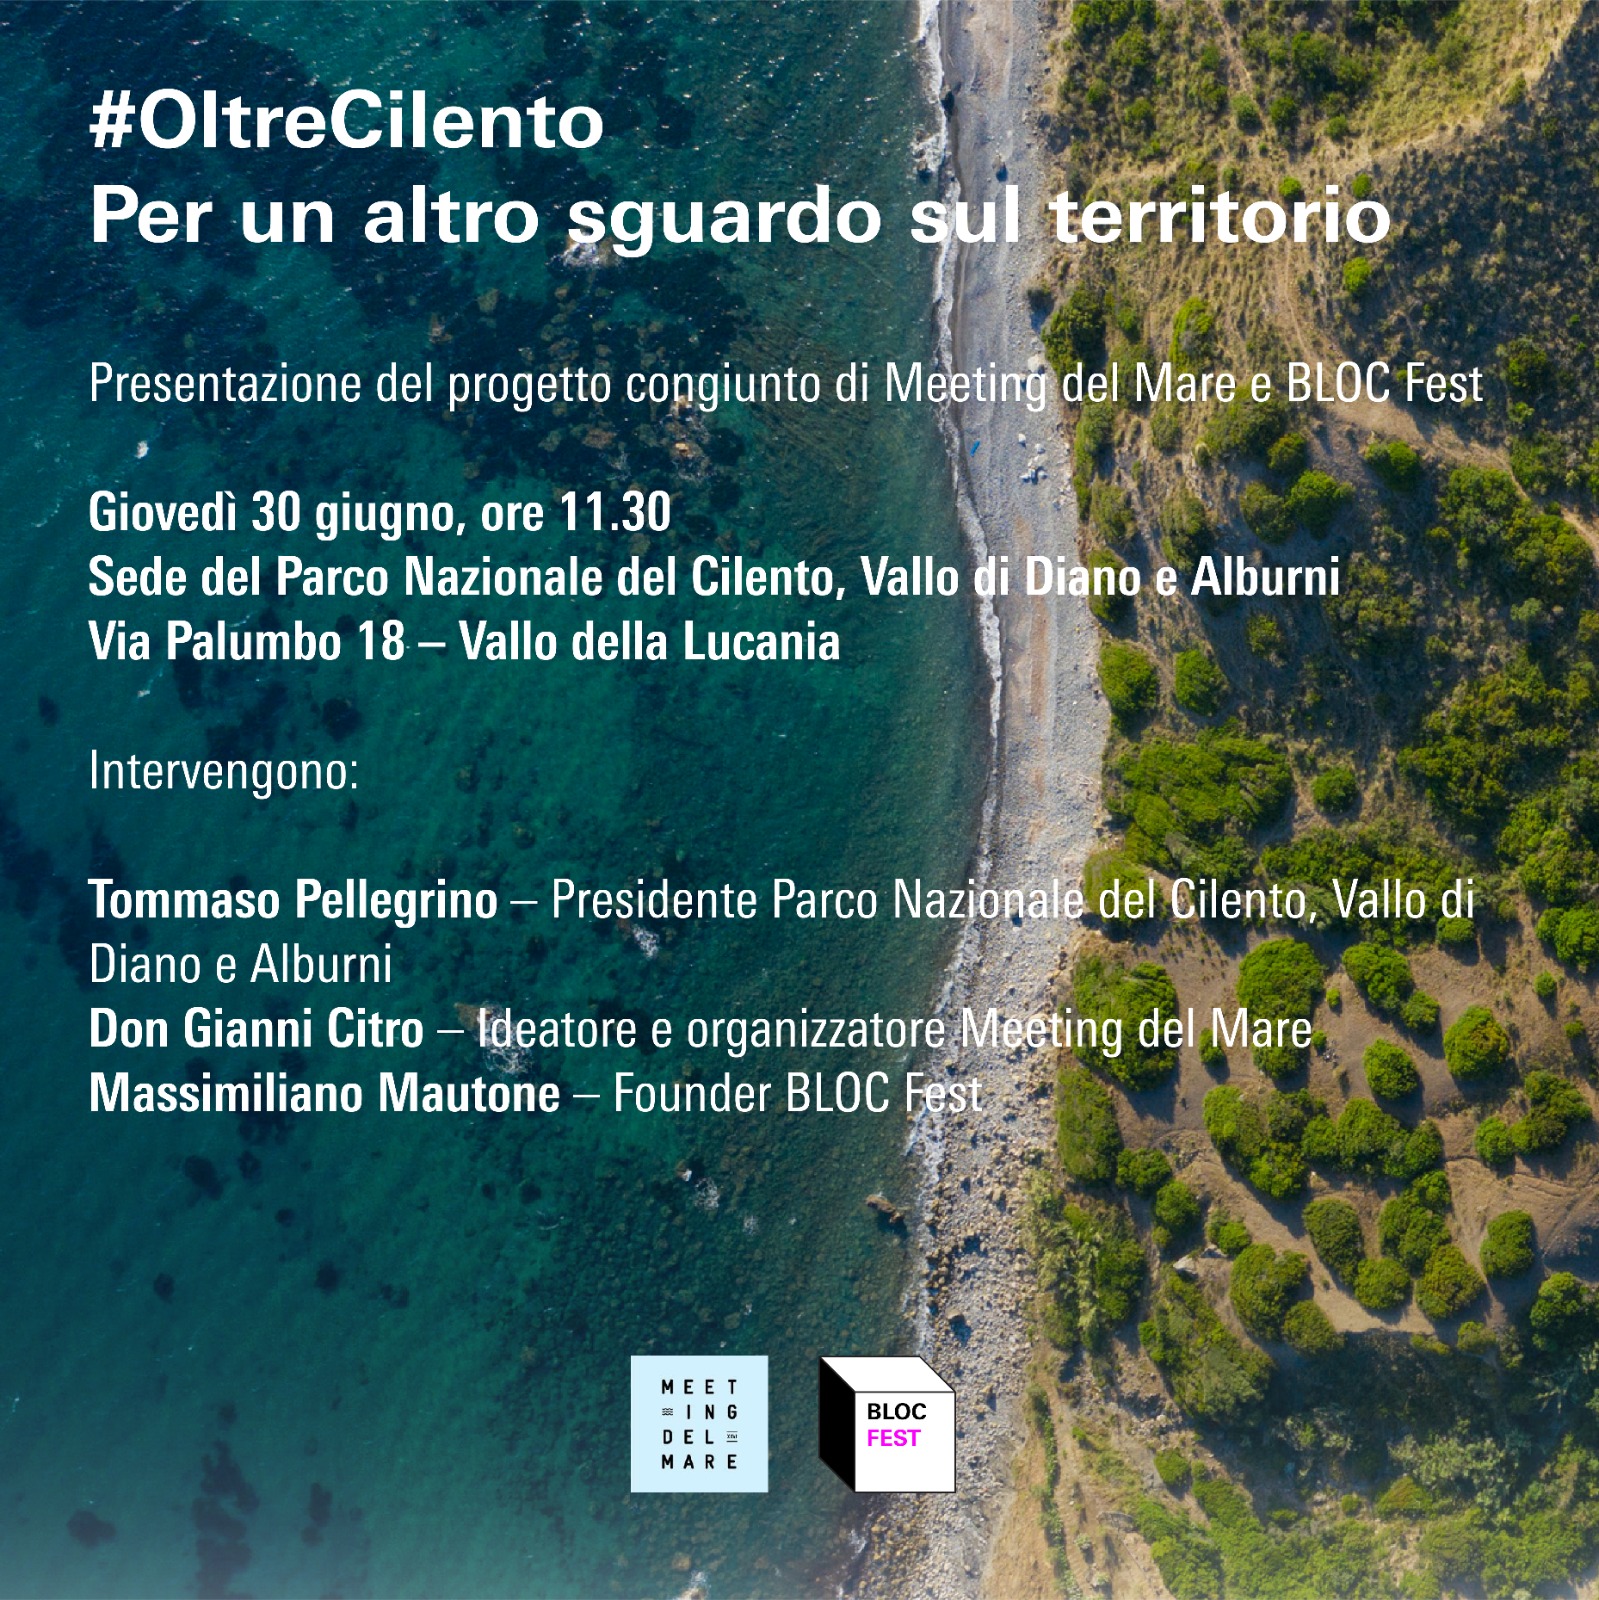 Vallo della Lucania: Parco del Cilento, Meeting del Mare – BLOC Fest, presentazione #OltreCilento